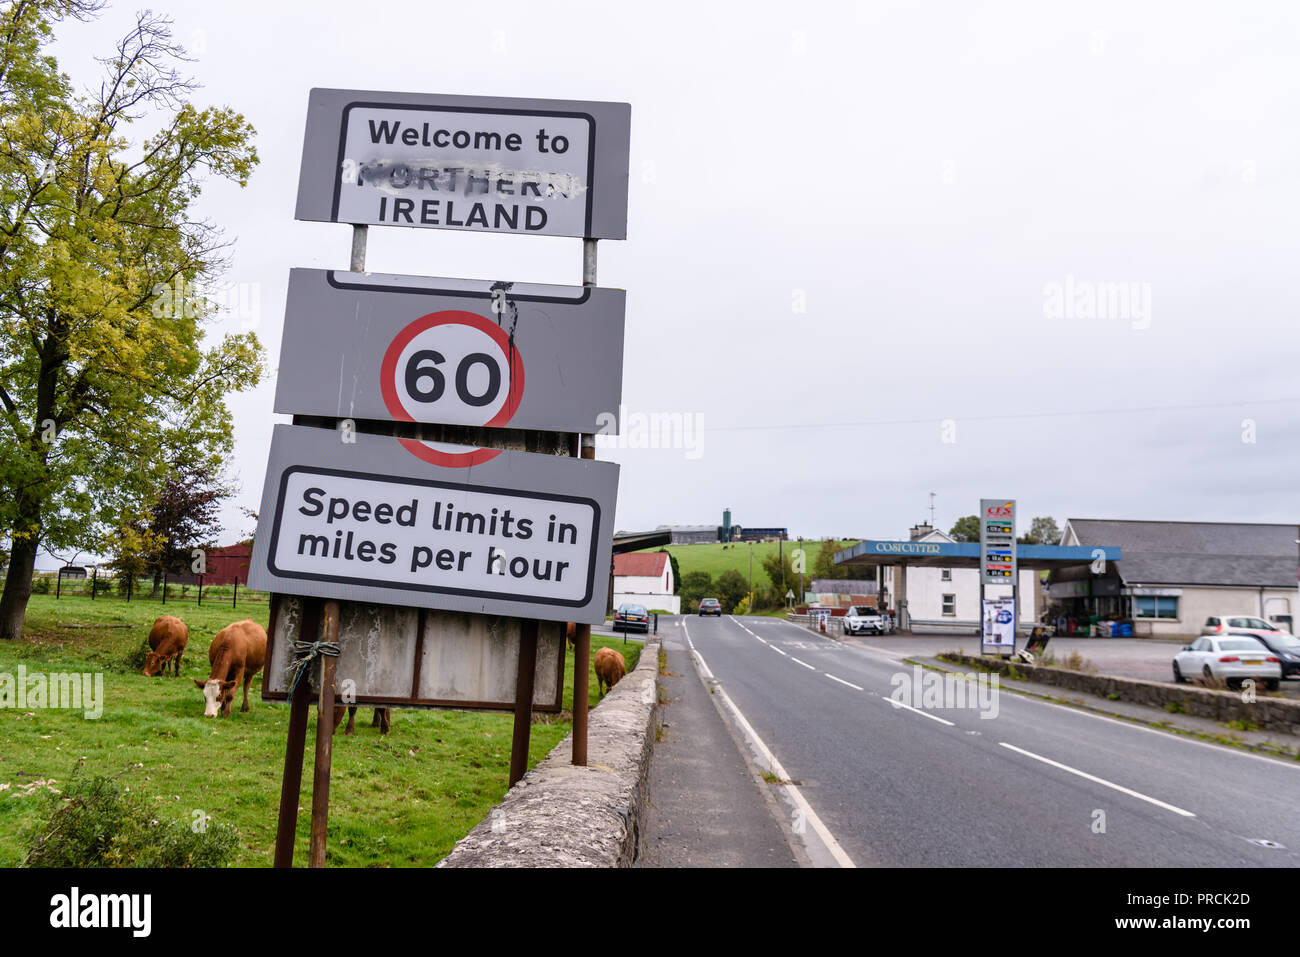 Inscrivez-vous à la frontière irlandaise entre Irlande du Nord et la République d'Irlande que pour détourner les limites de vitesse sont maintenant en miles par heure. Banque D'Images